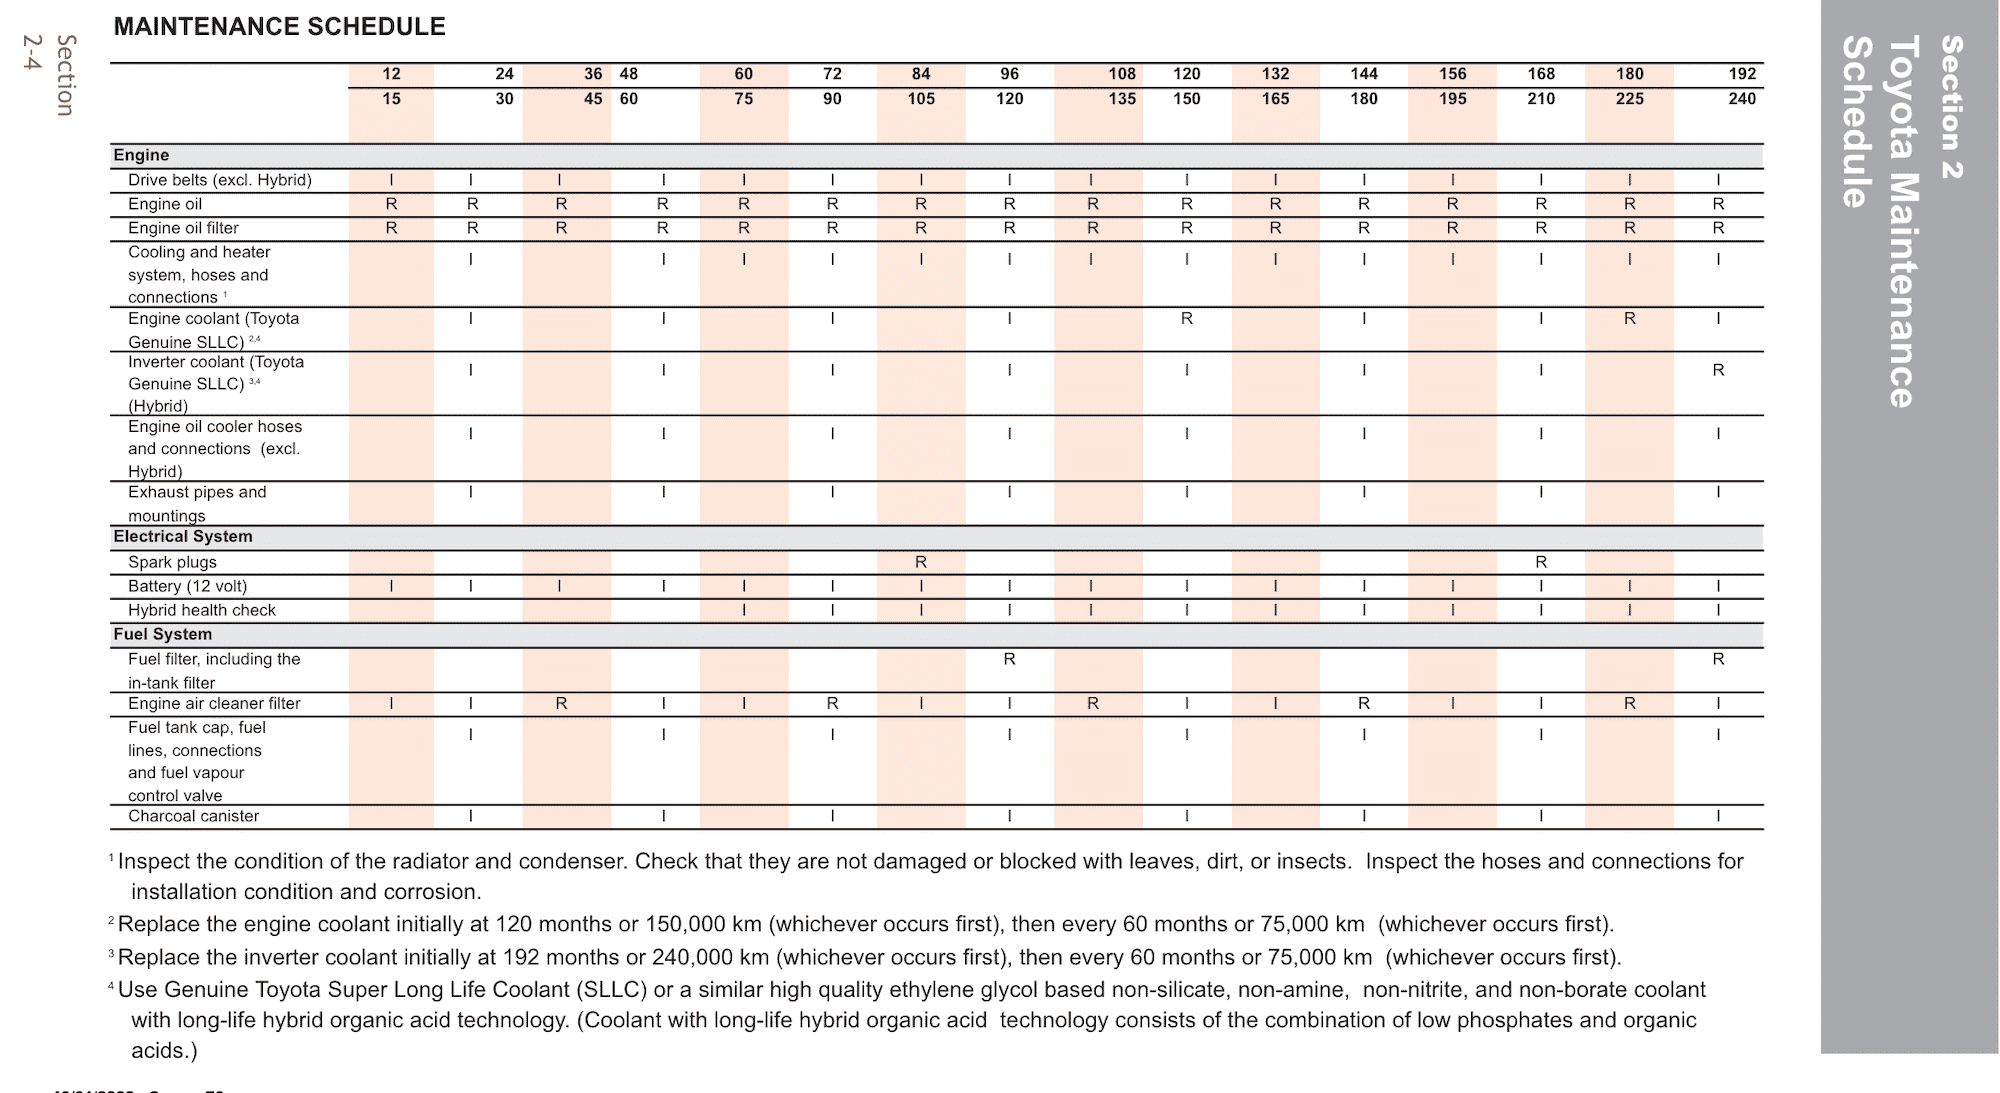 Toyota Camry Hybrid (2018+, 8th gen) Maintenance Schedule